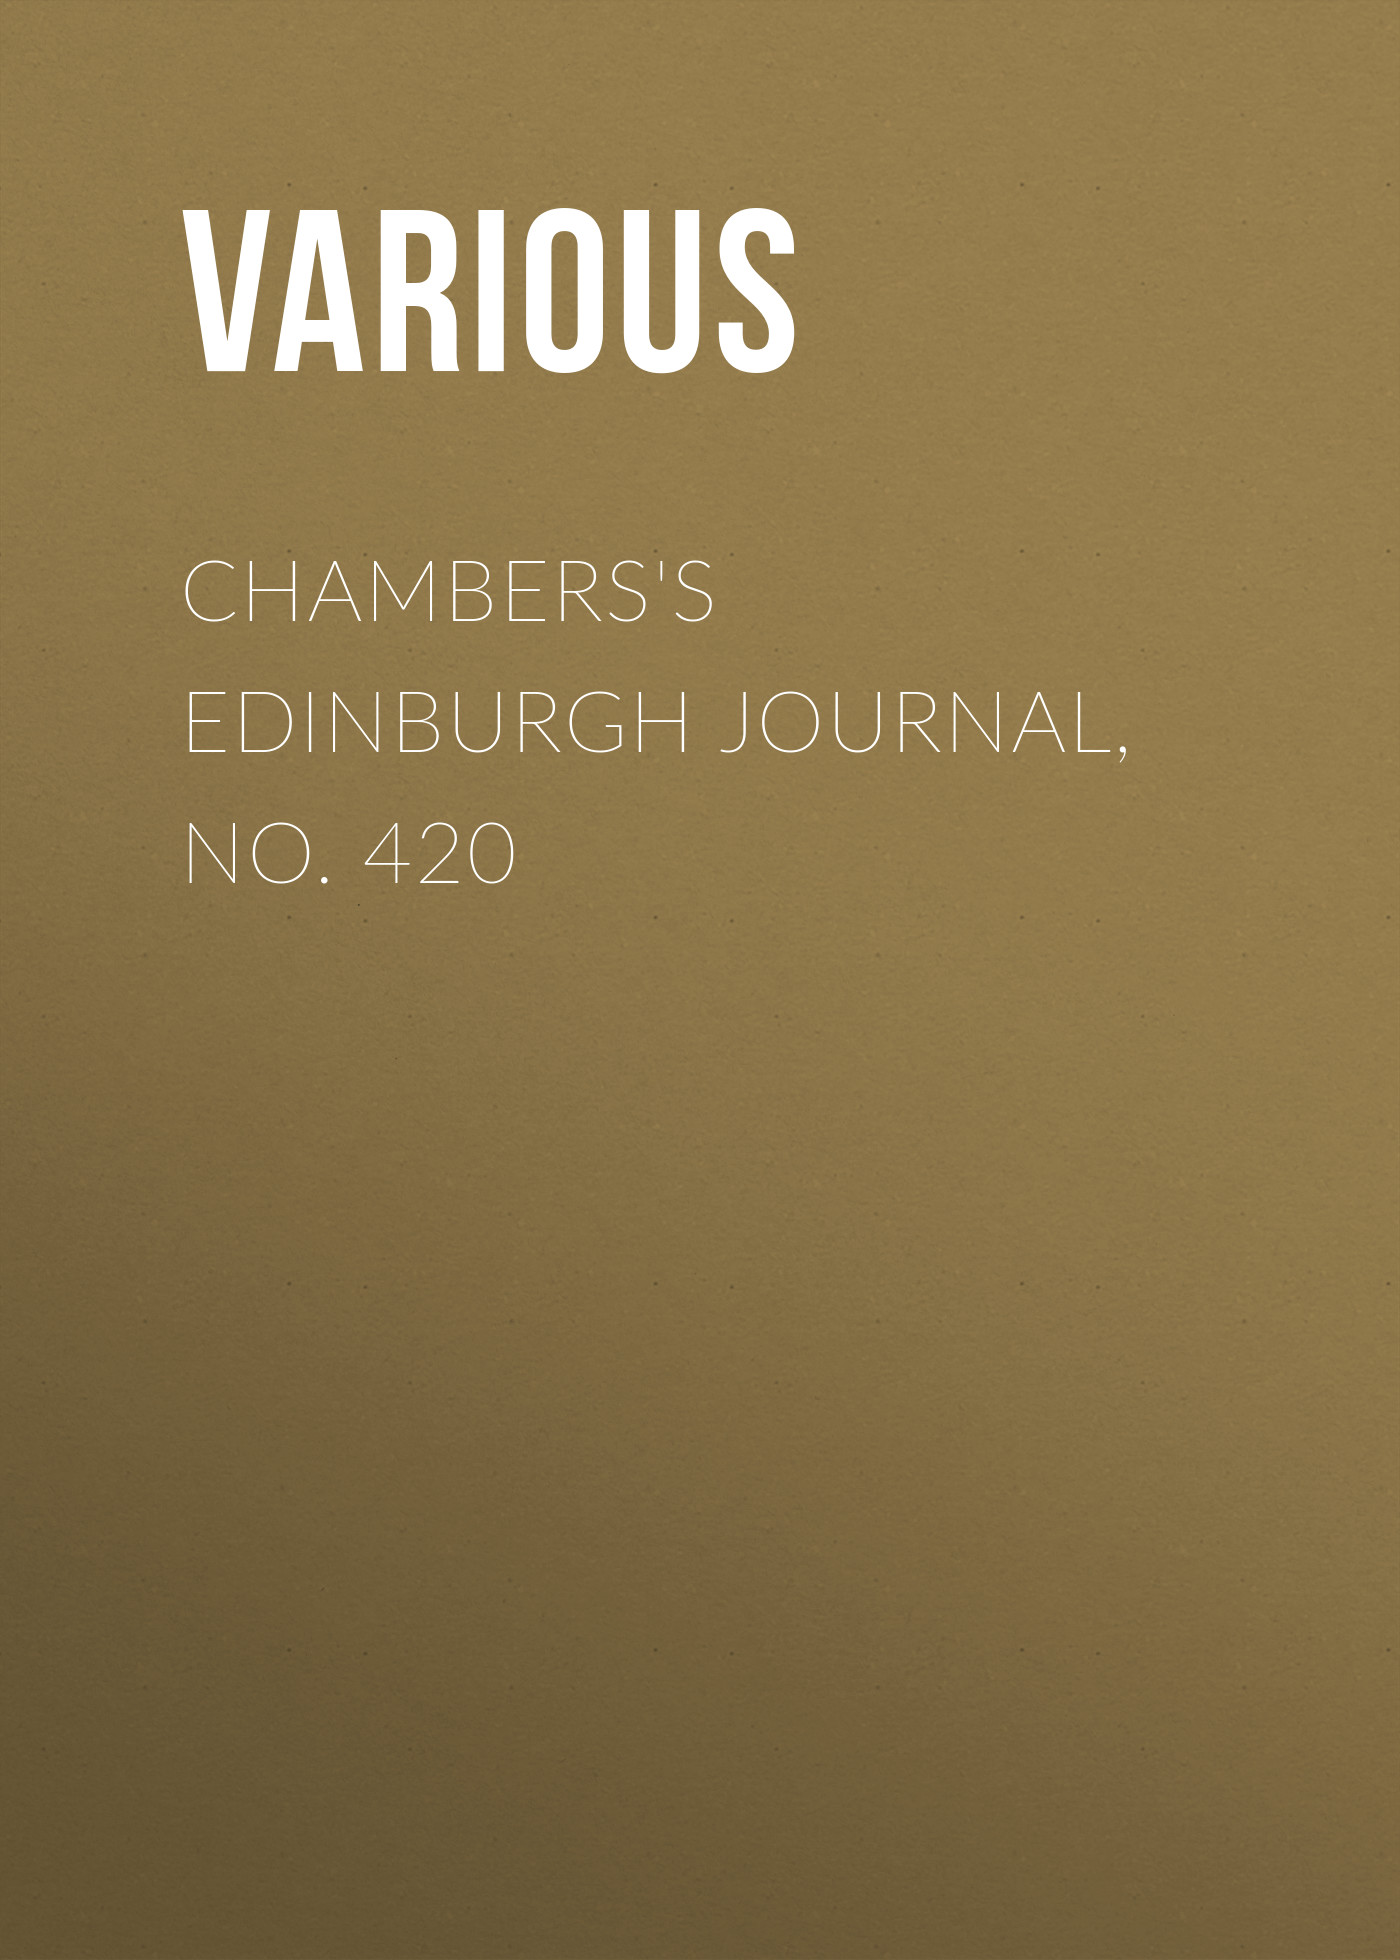 Книга Chambers's Edinburgh Journal, No. 420 из серии , созданная  Various, может относится к жанру Зарубежная старинная литература, Журналы, Зарубежная образовательная литература. Стоимость электронной книги Chambers's Edinburgh Journal, No. 420 с идентификатором 35492127 составляет 0 руб.